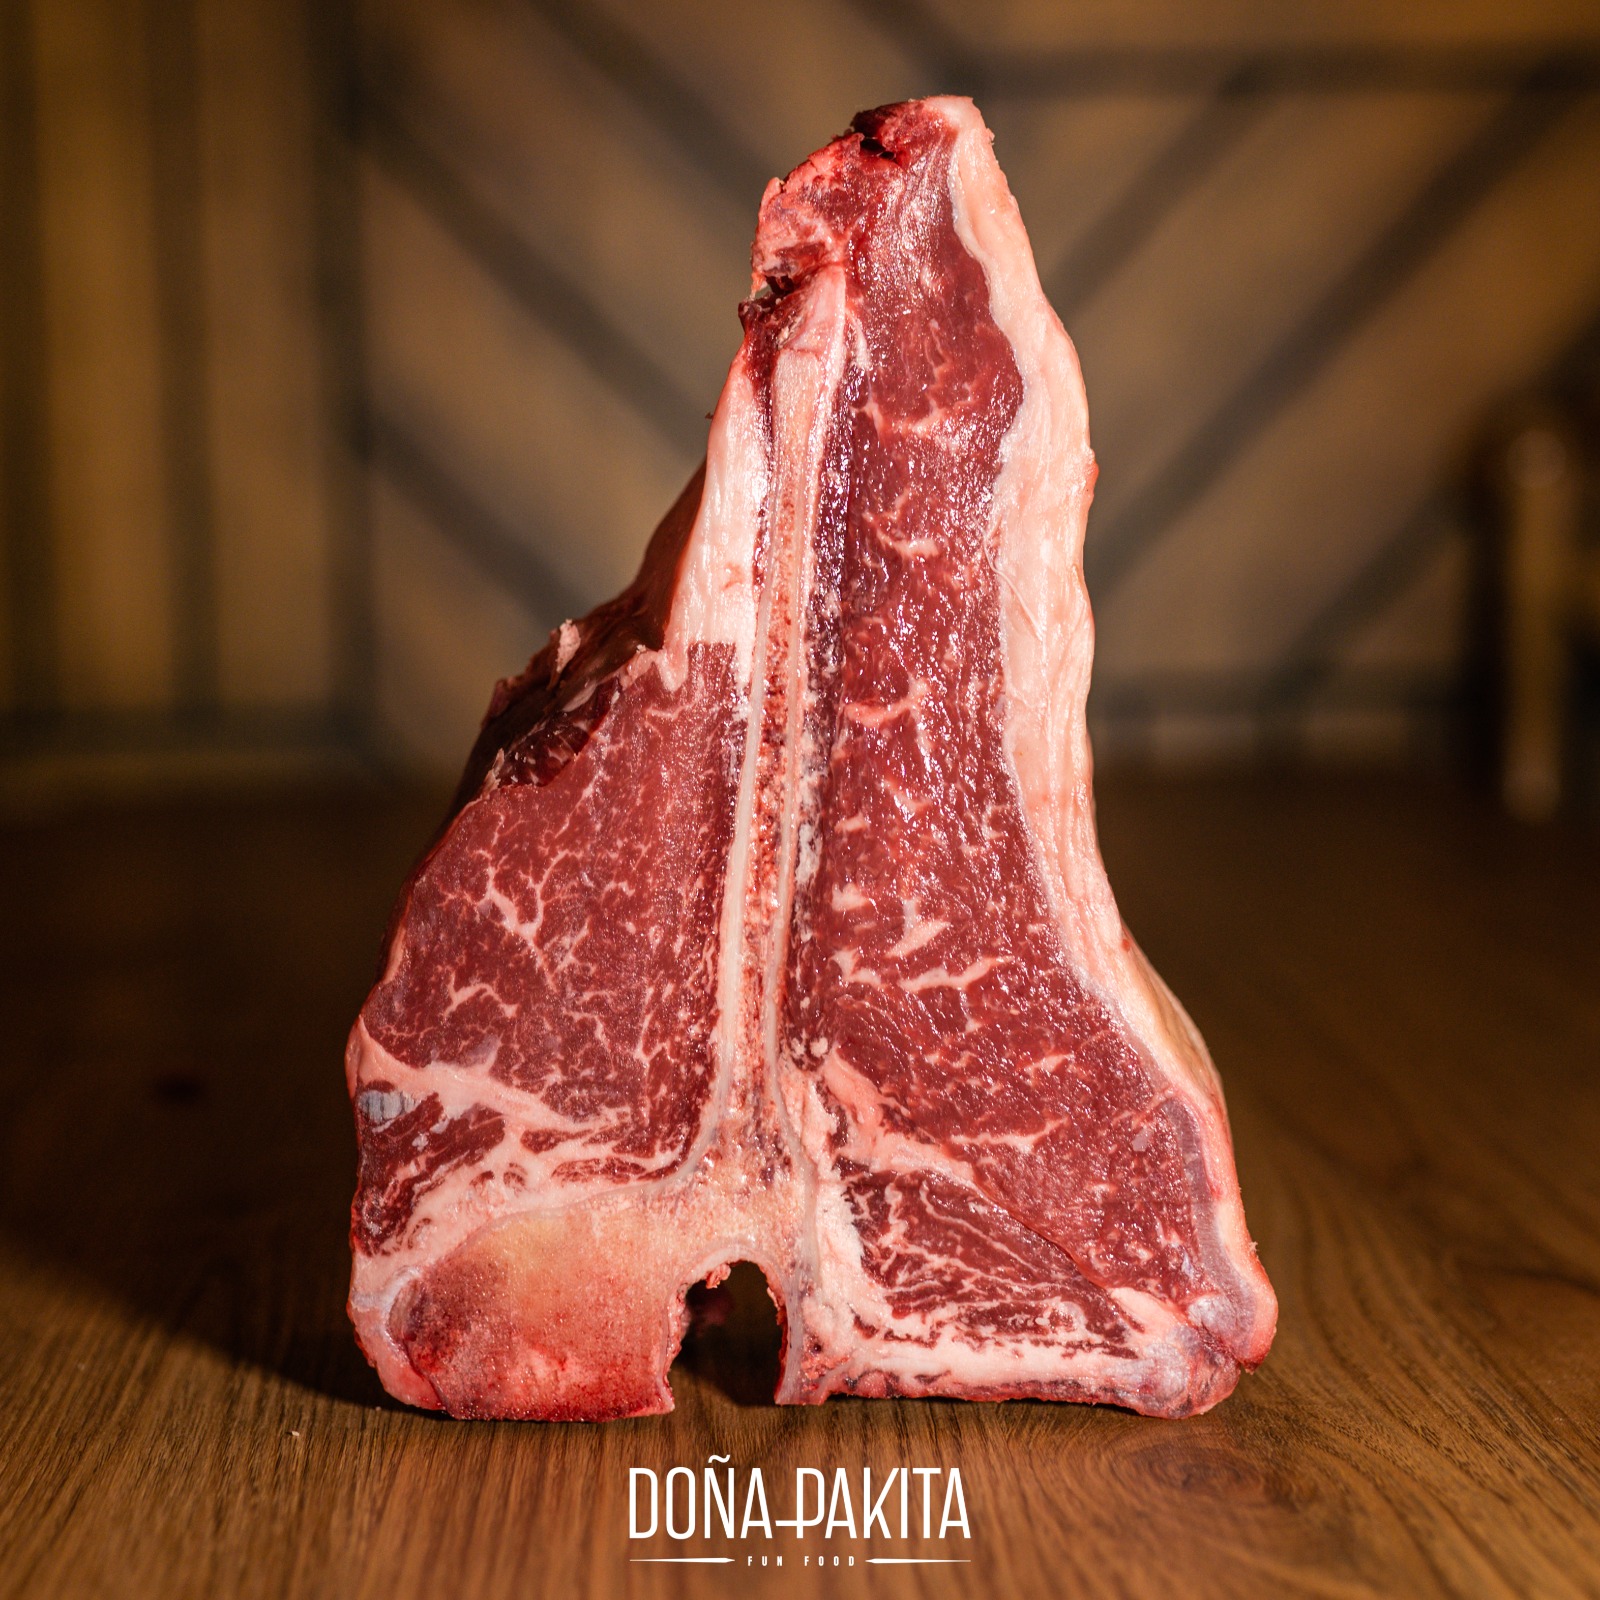 Beef T-bone steak (1kg)